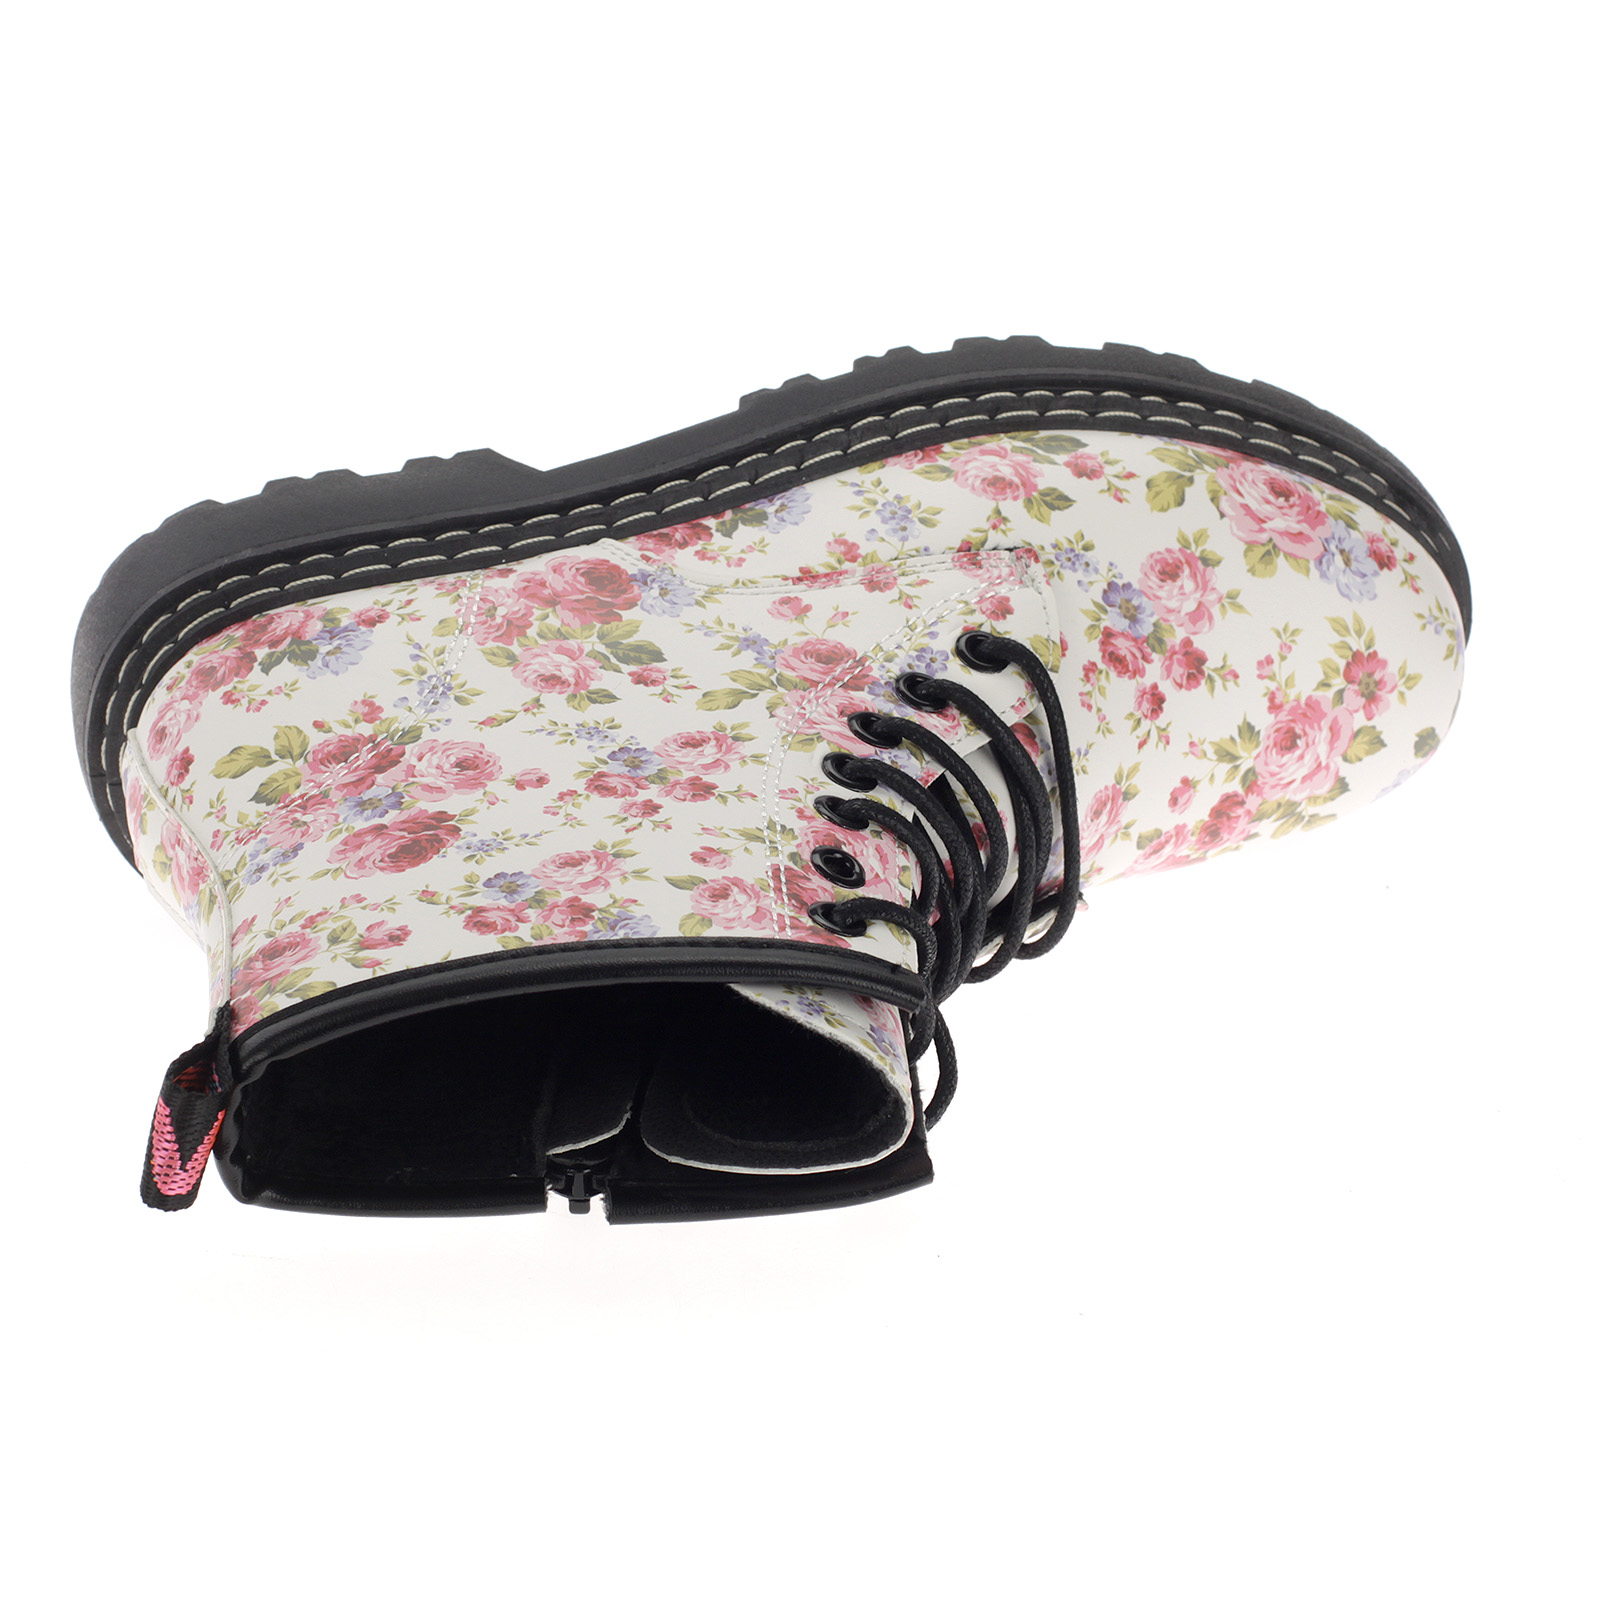 Damen Boots Stiefeletten Stiefel Gefütterte Schuhe Blumen Freizeit 20201 pink